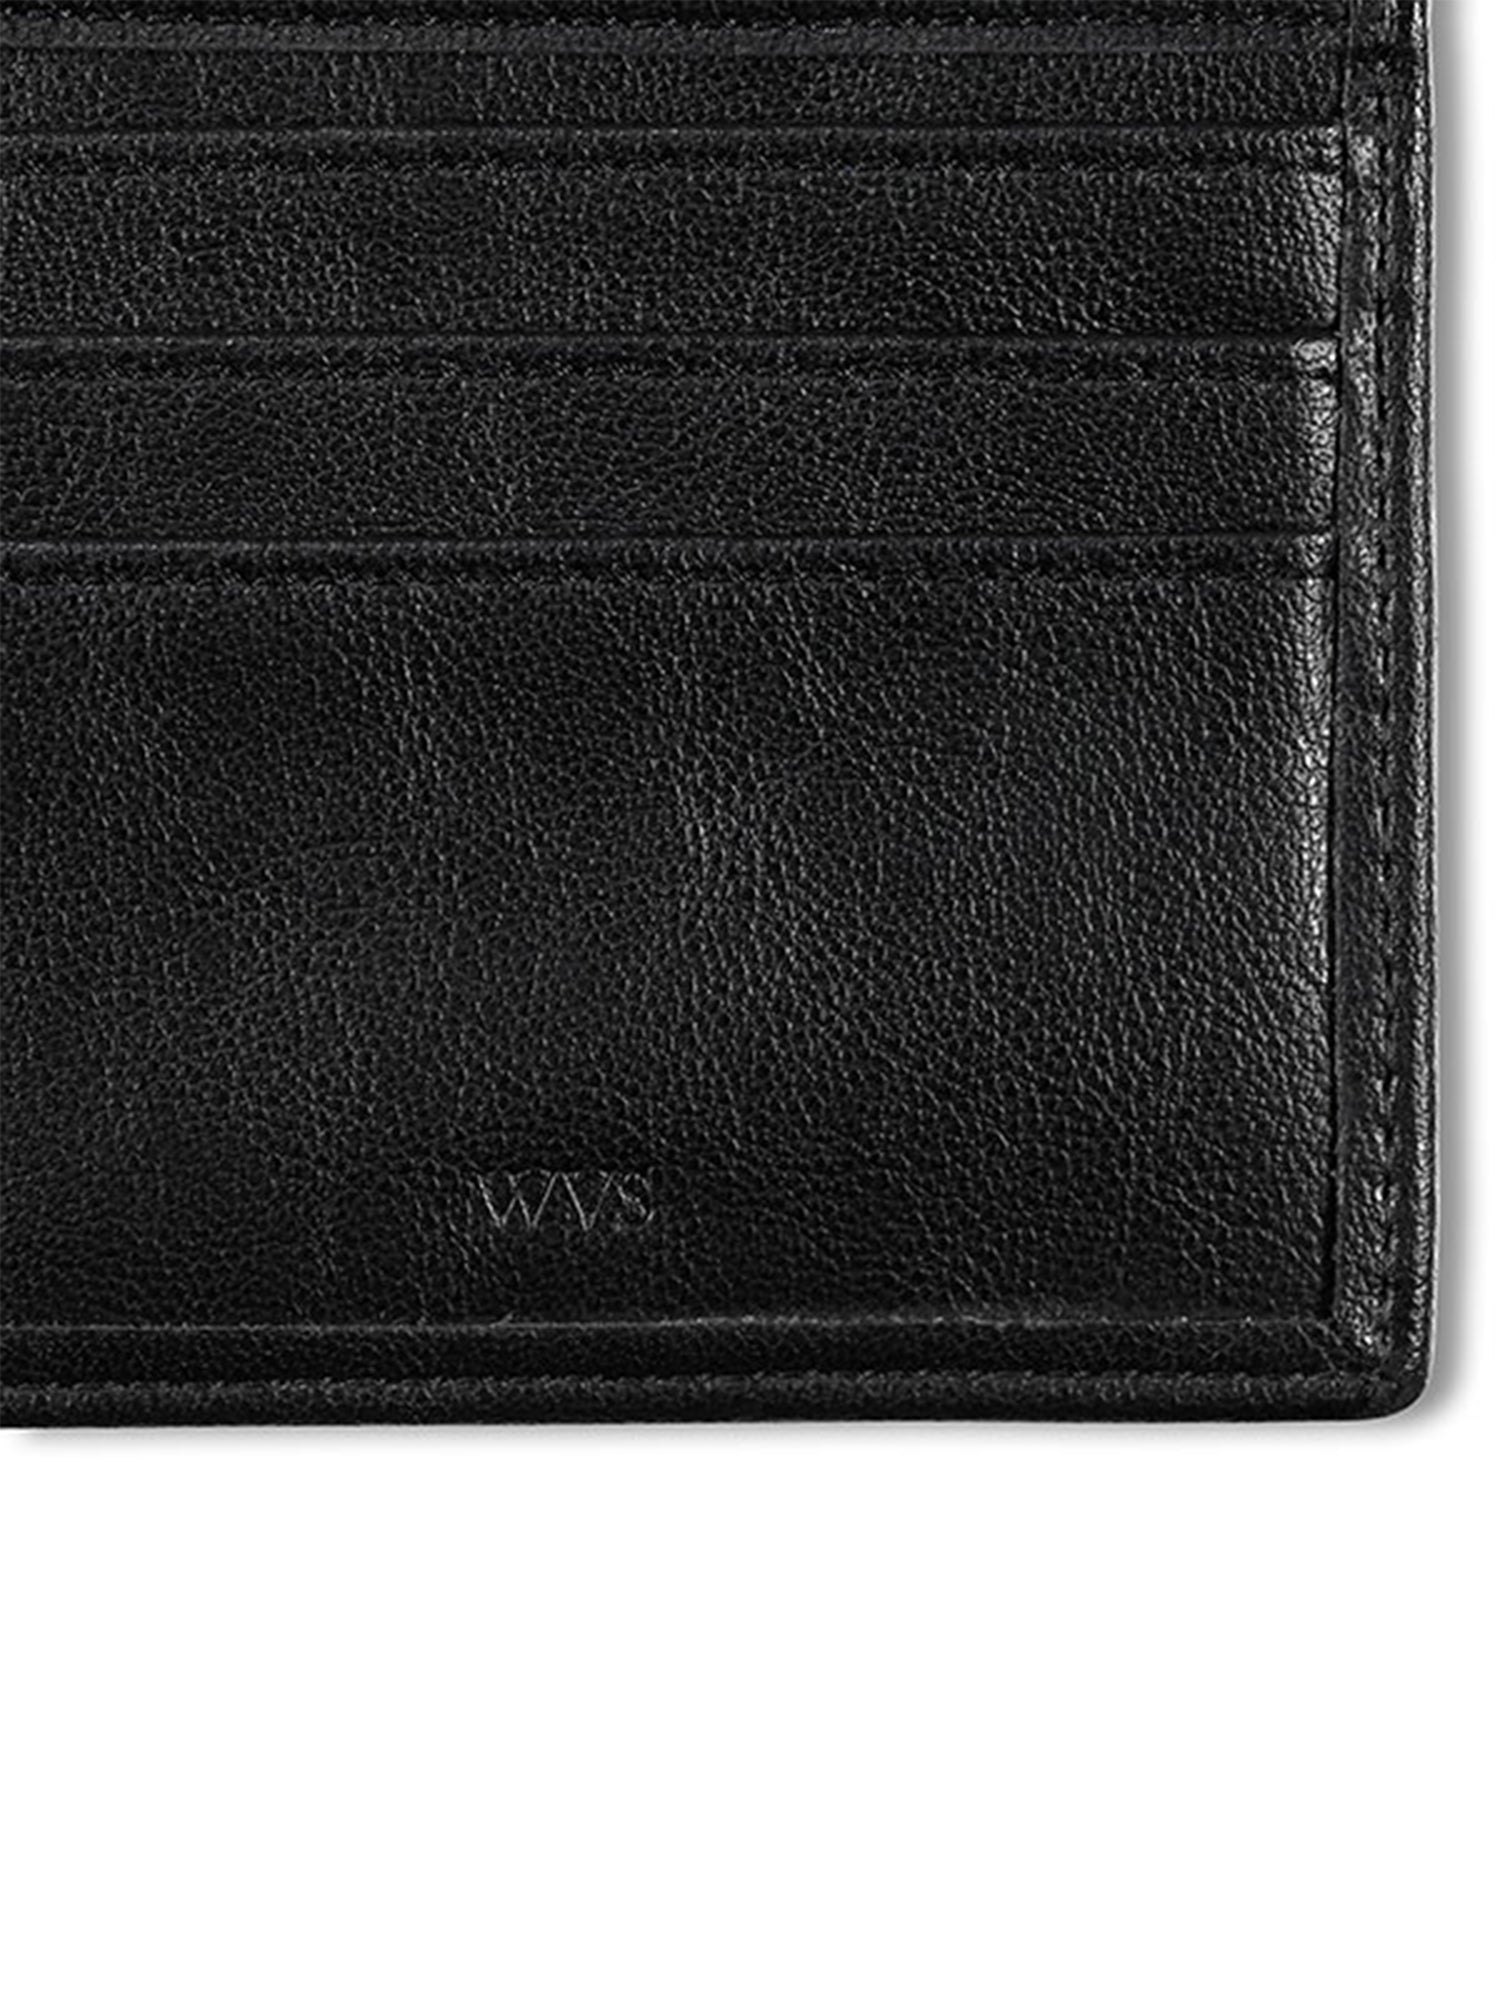 Vegan Men's Slim US billfold ID wallet | Will's Vegan Store